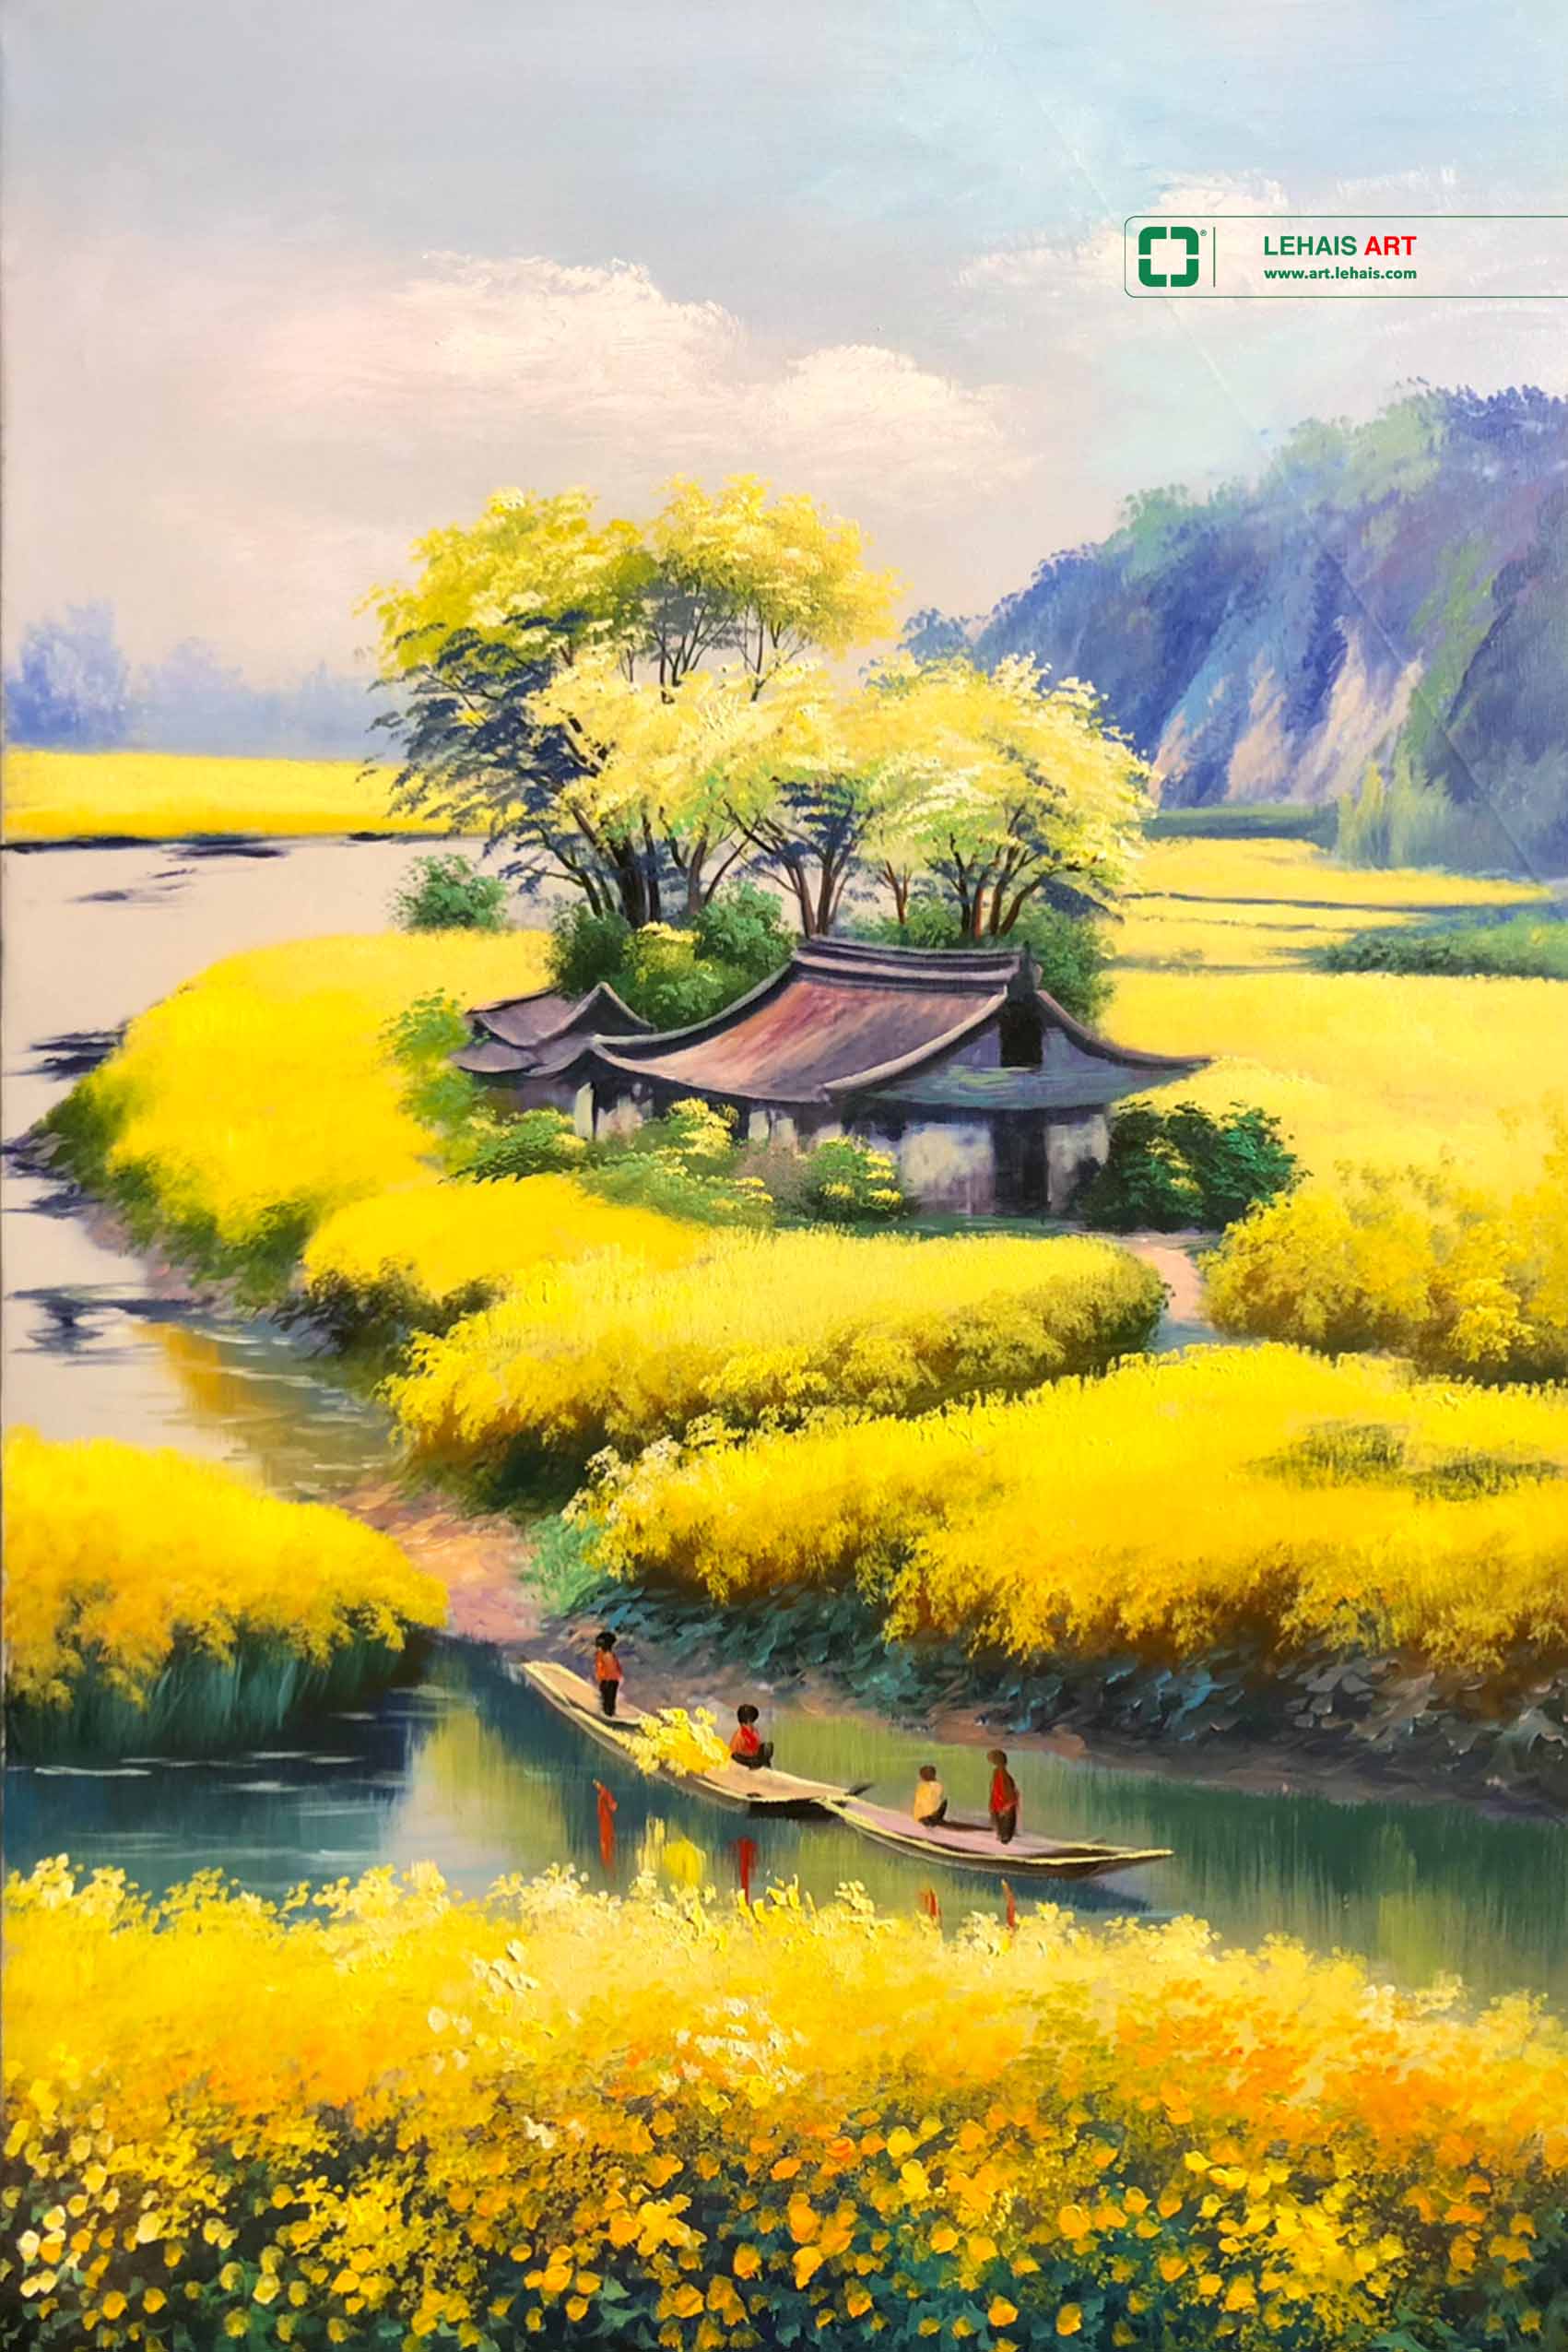 Tranh sơn dầu cảnh cánh đồng hoa vàng bên dòng sông - TSD661LHAR